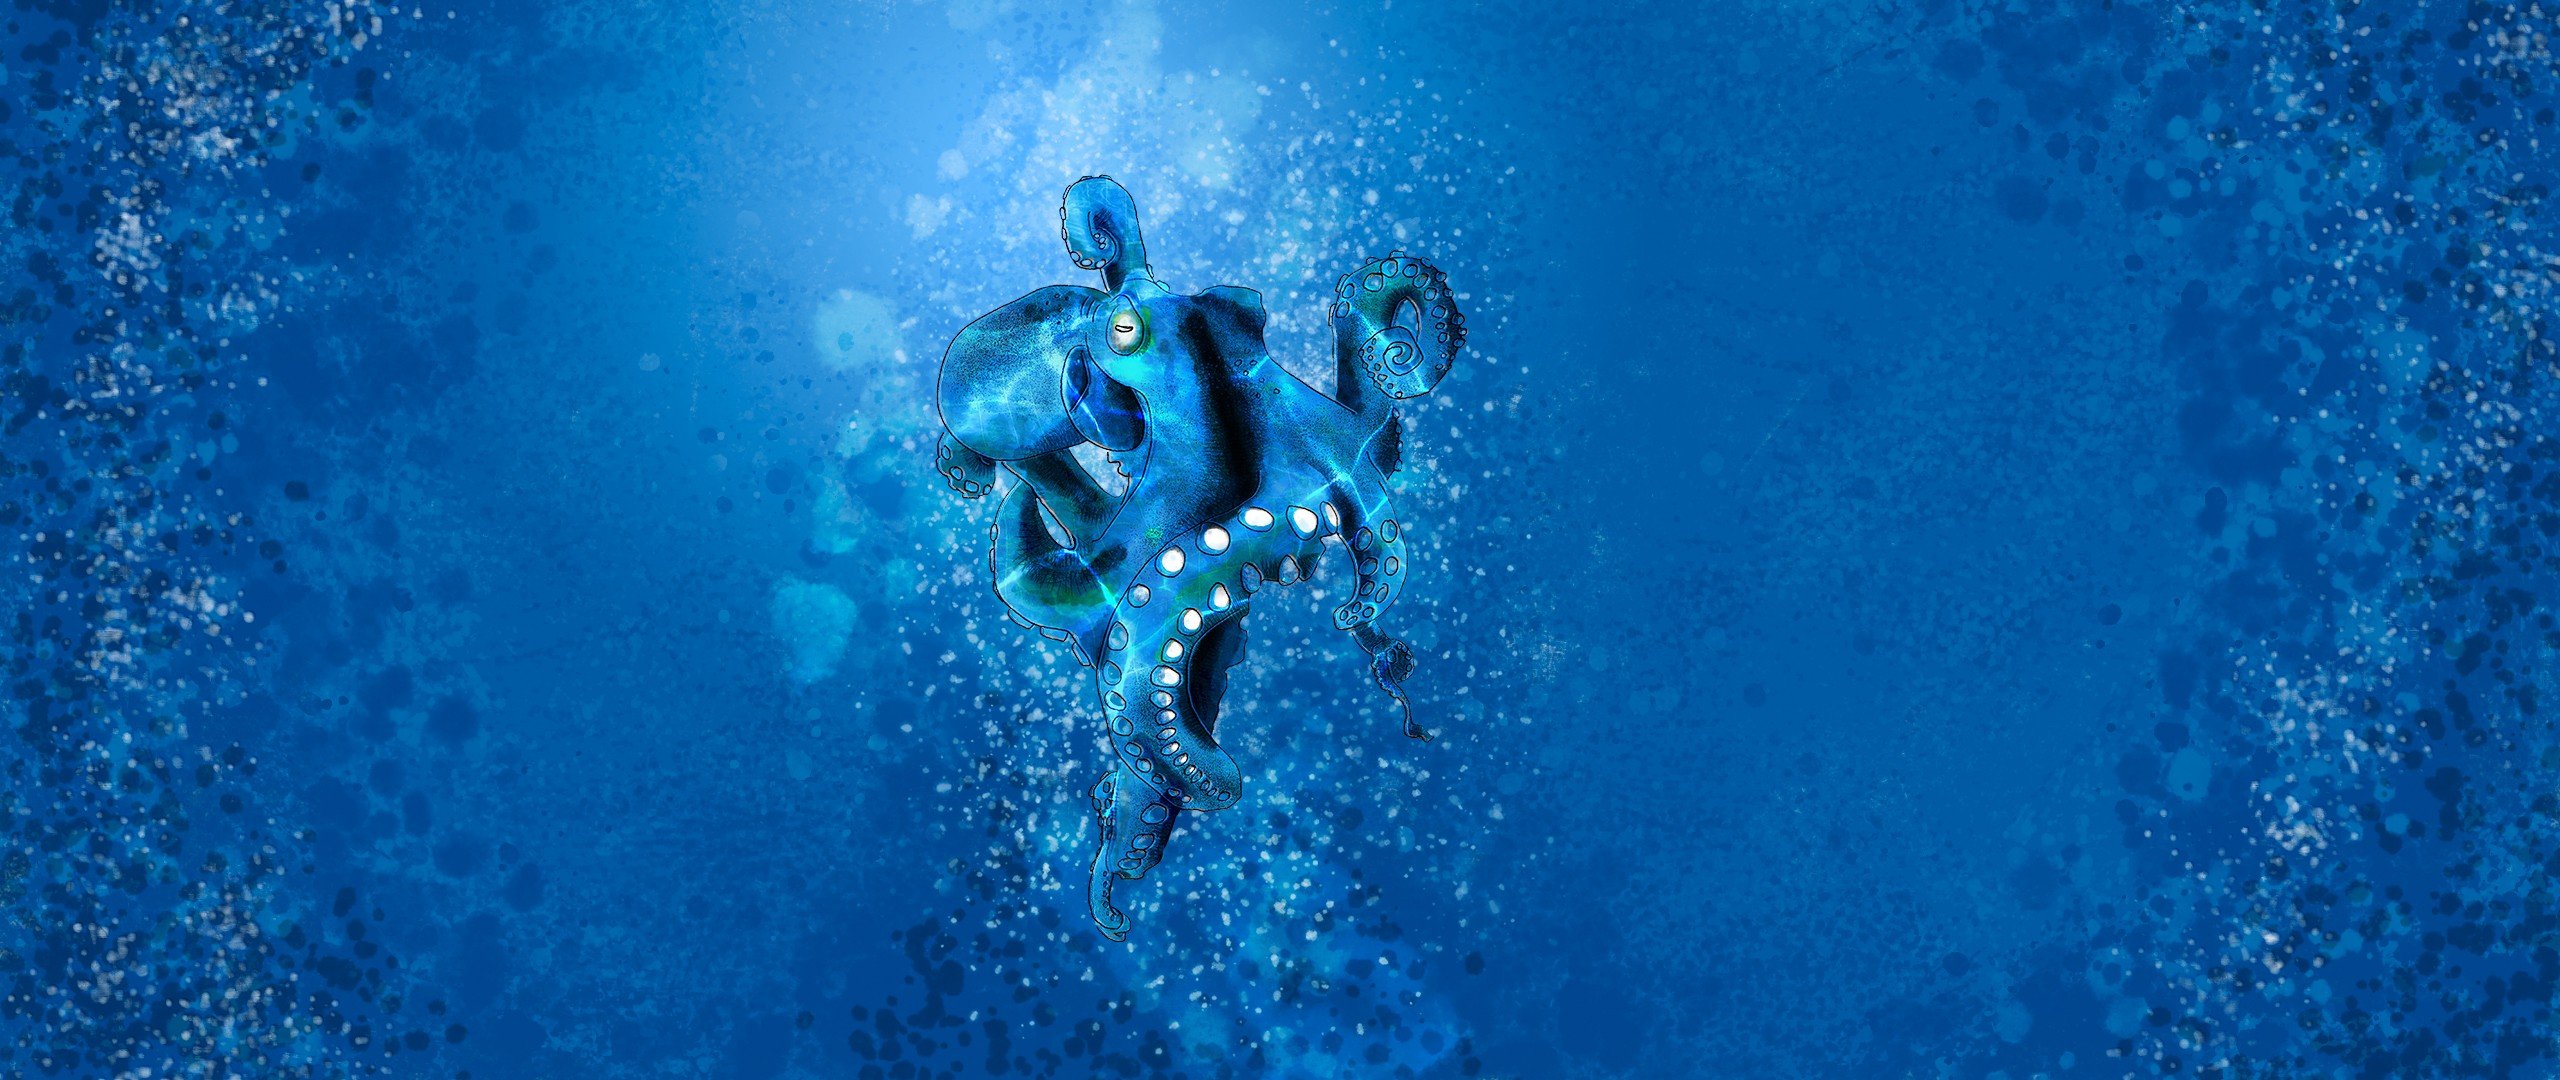 sketck, Octopus, Blue, Paint in water, Painting Wallpaper